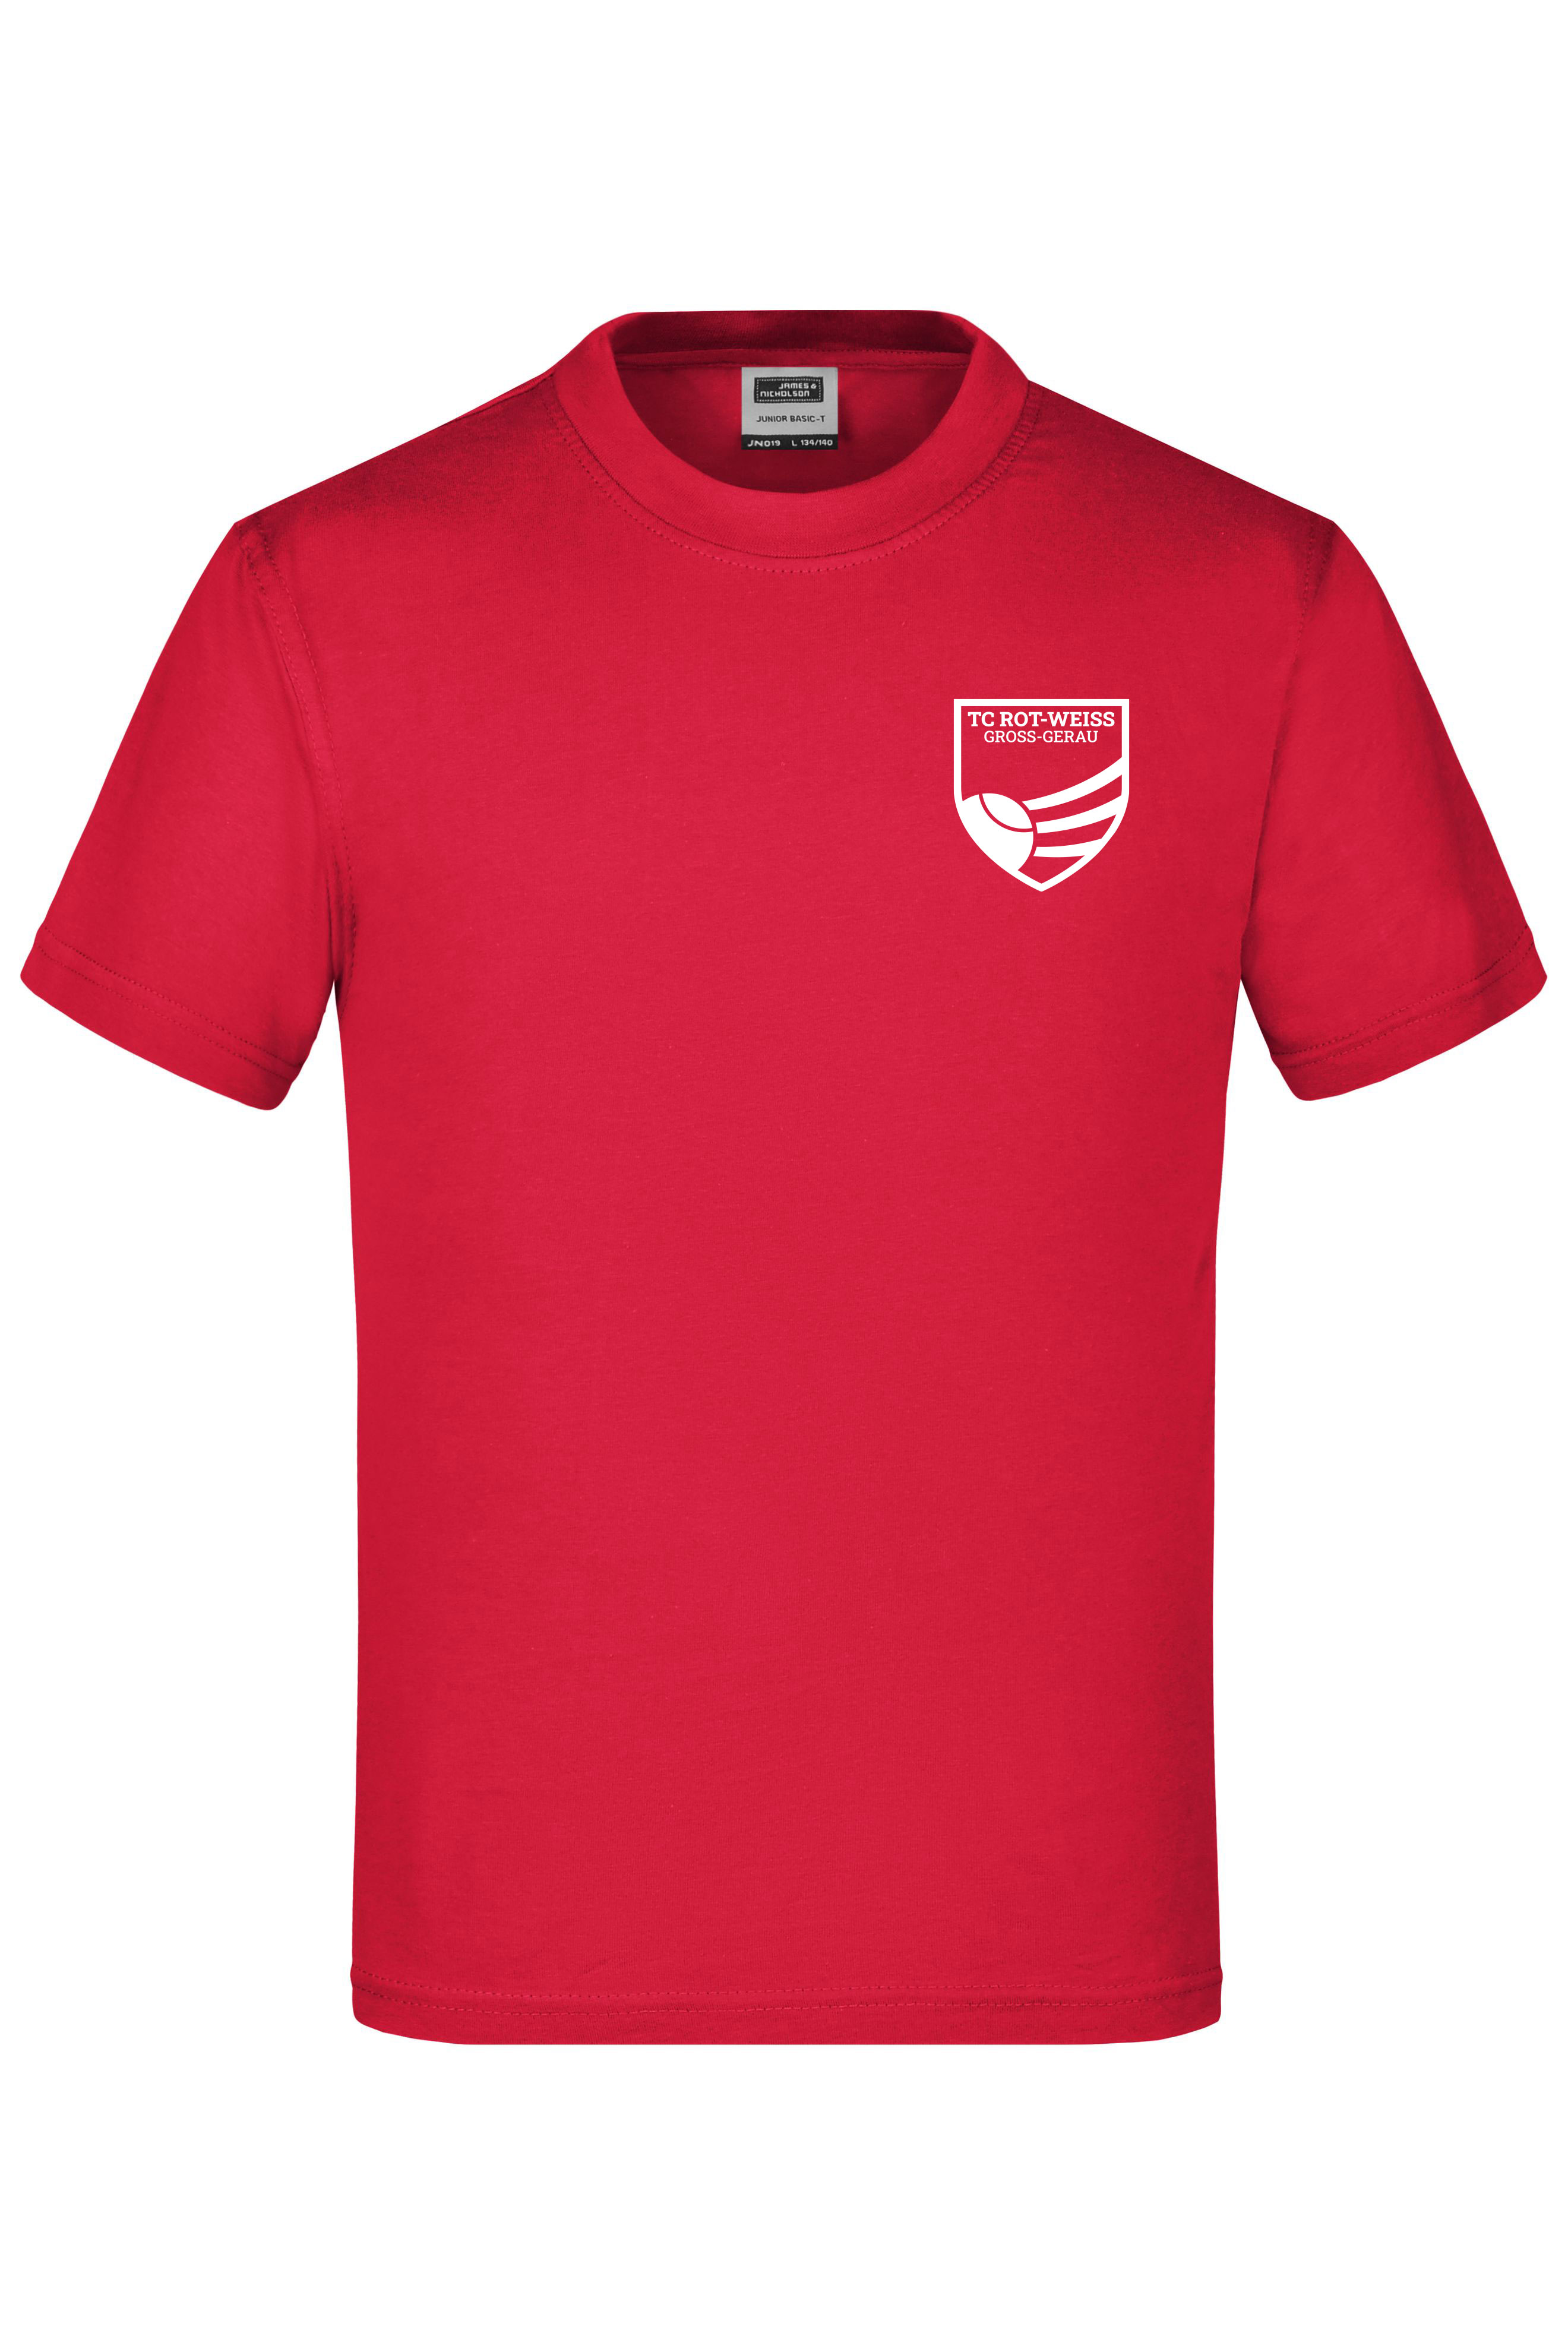 TC Rot-Weiss - Vorteil GG - Kinder T-Shirt weiss auf rot